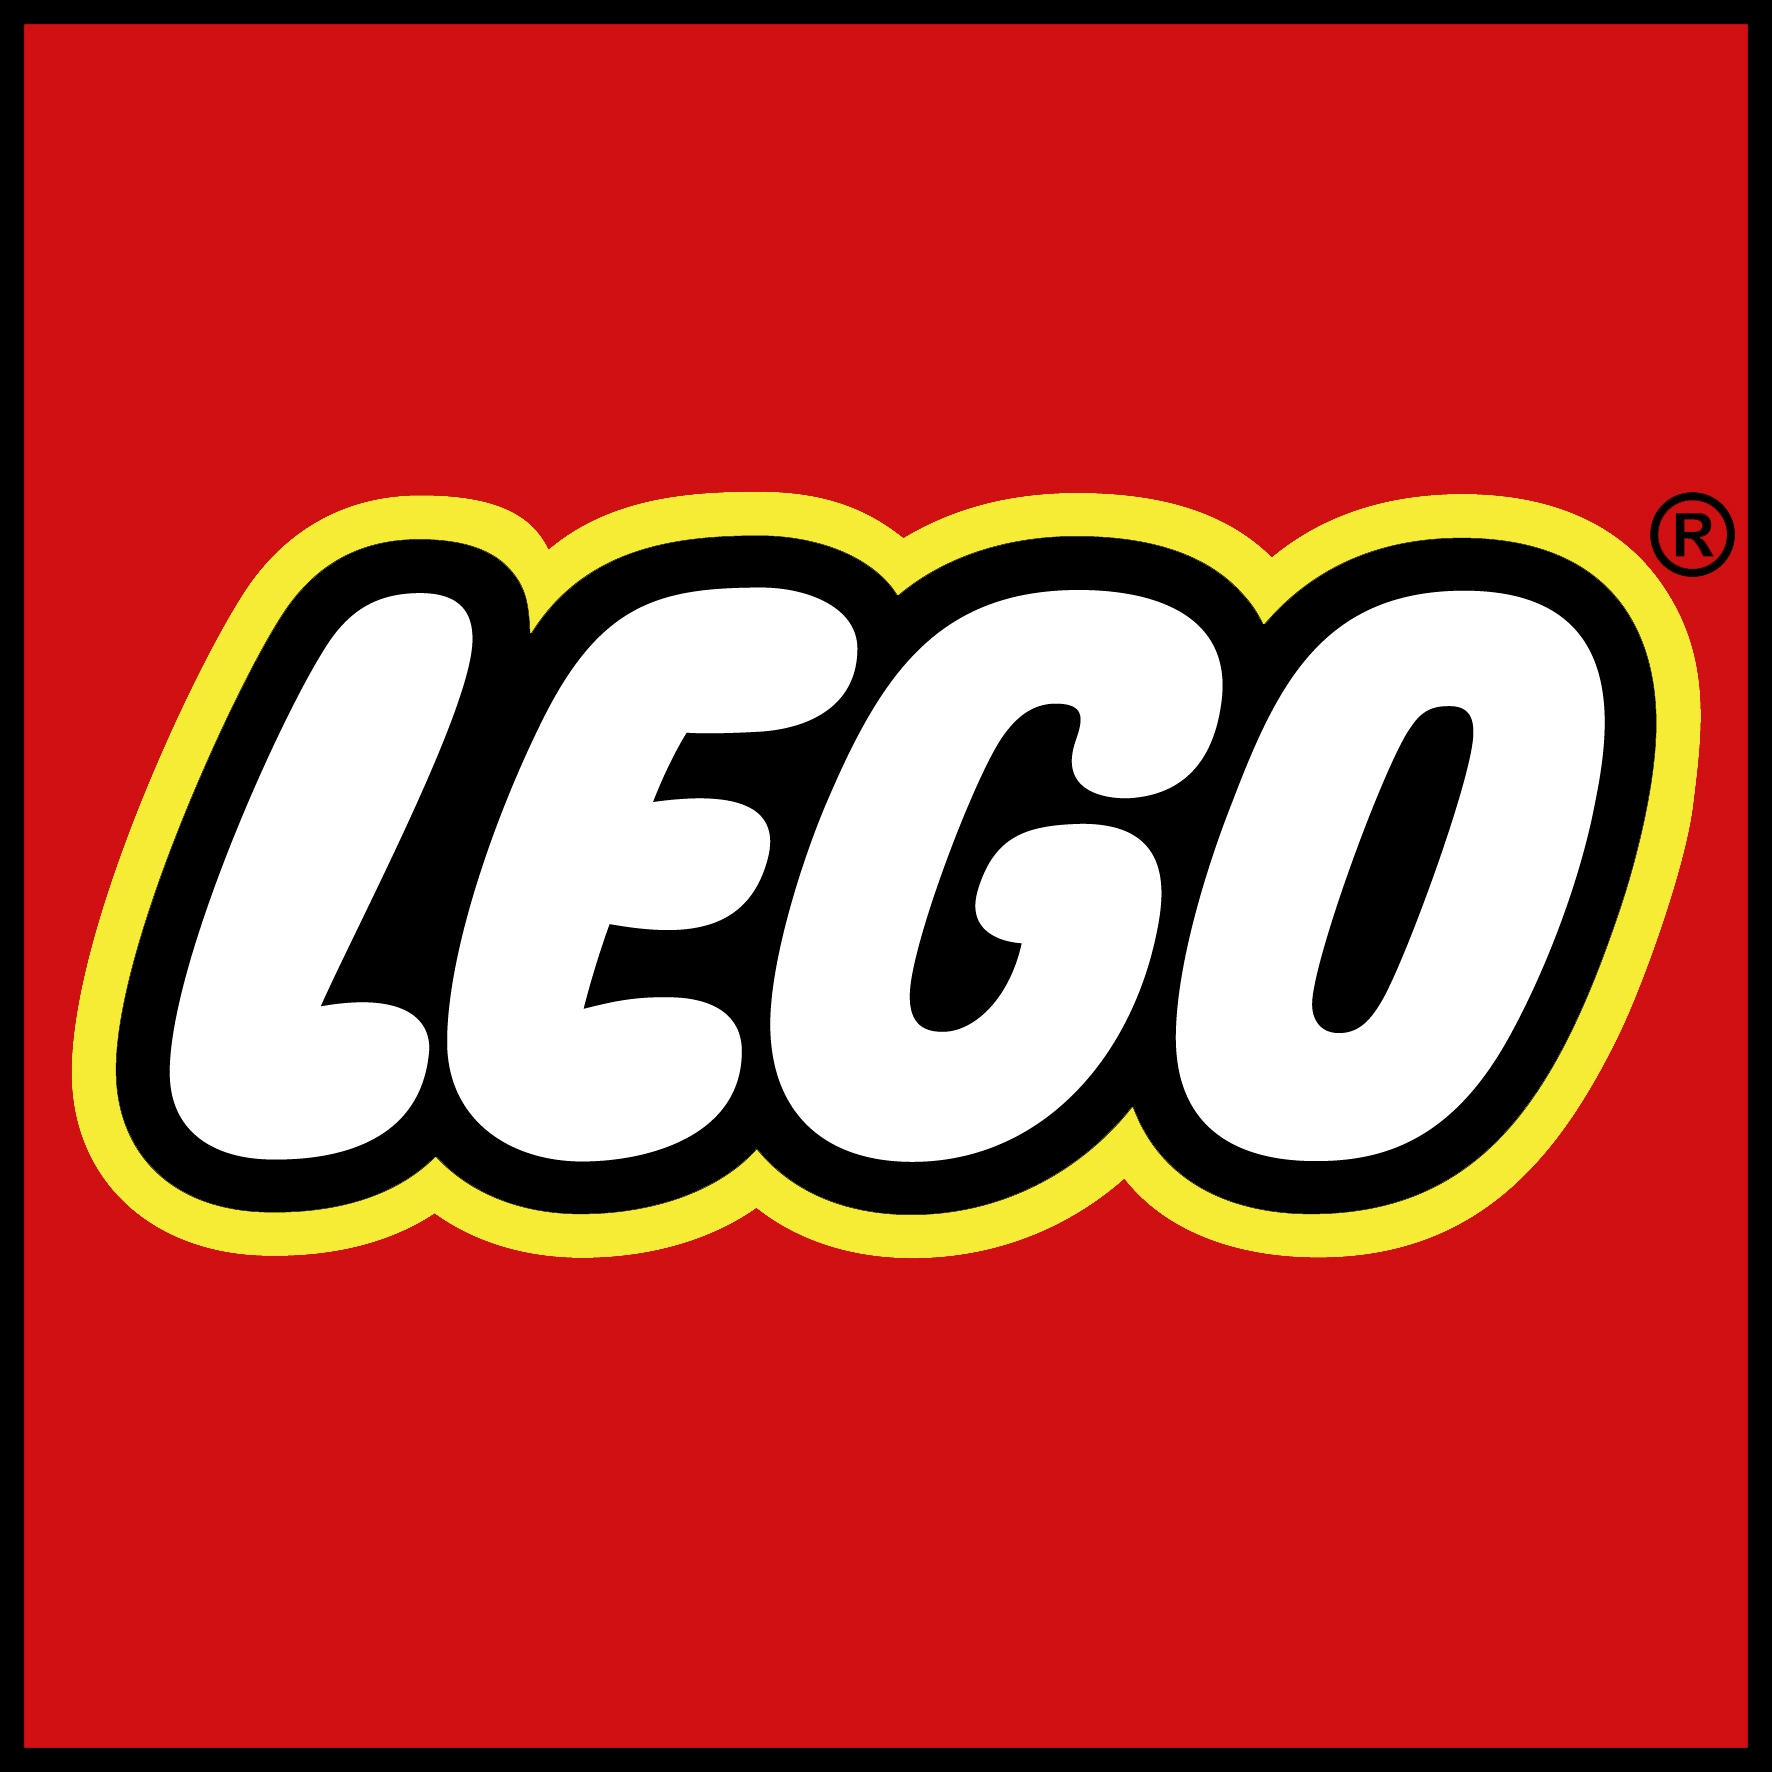 Świąteczny zestaw Lego gratis do zamówienia za minimum 